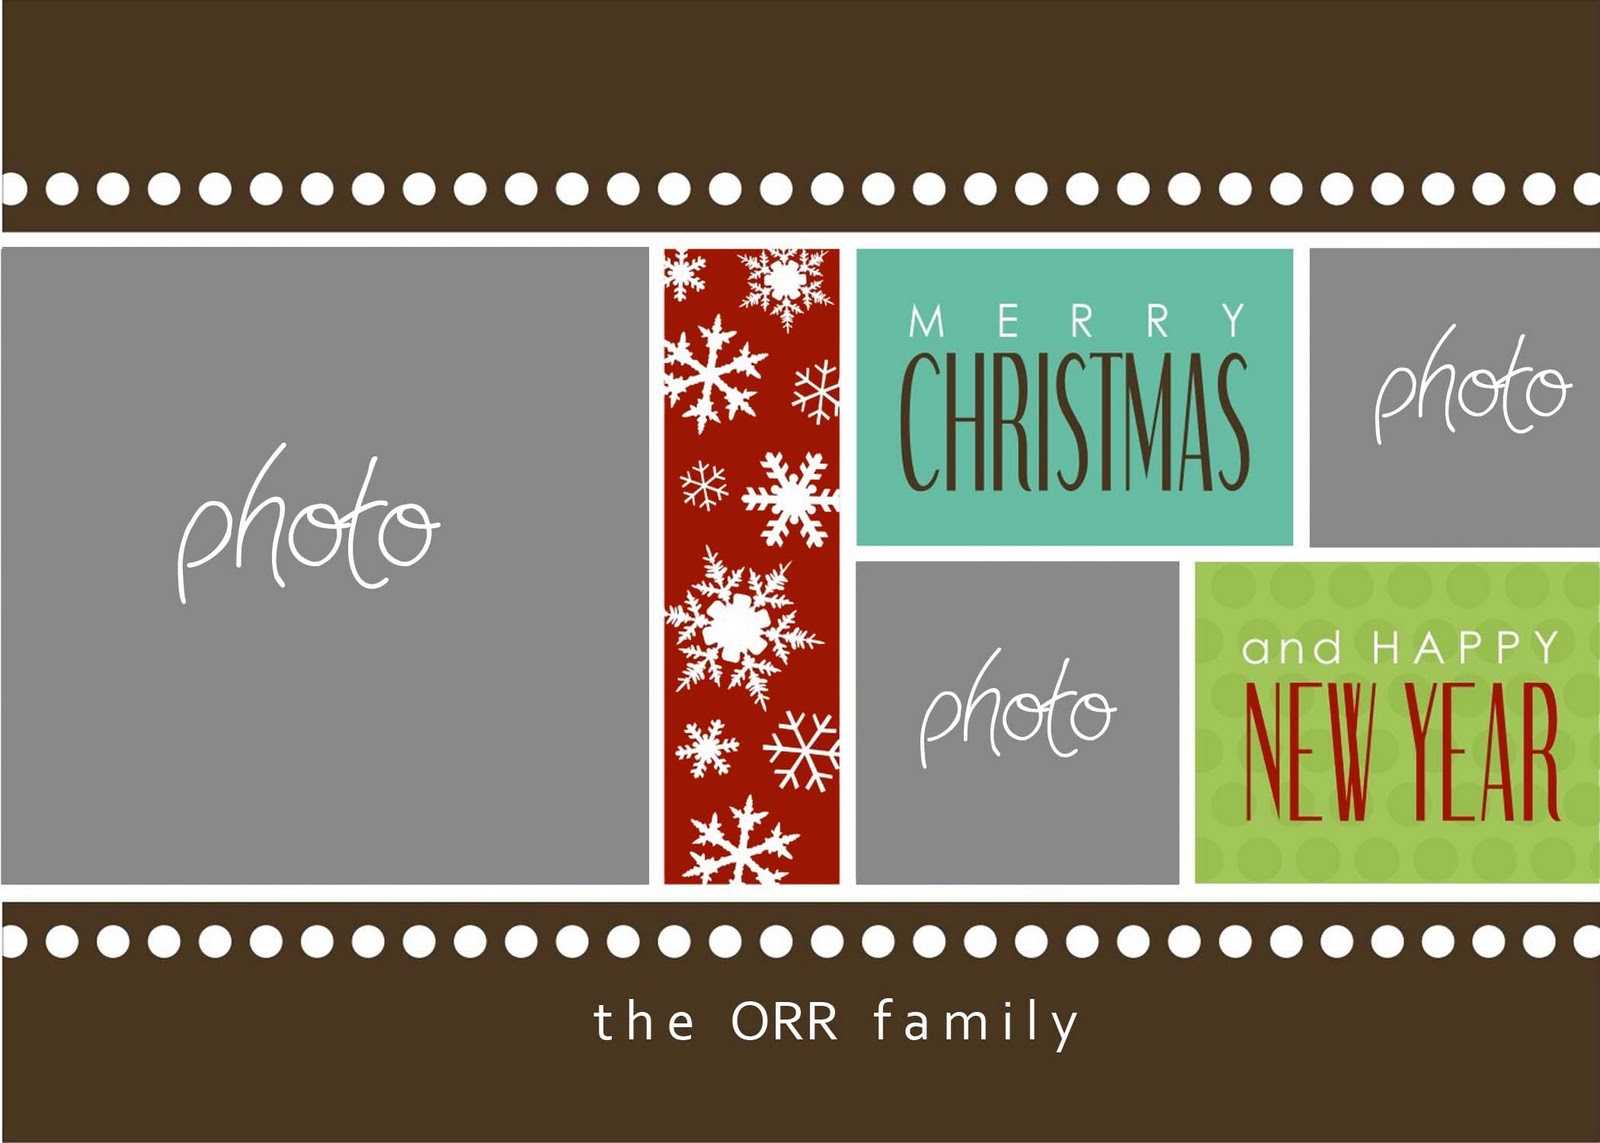 Christmas Cards Templates Photoshop ] – Christmas Card Within Christmas Photo Card Templates Photoshop